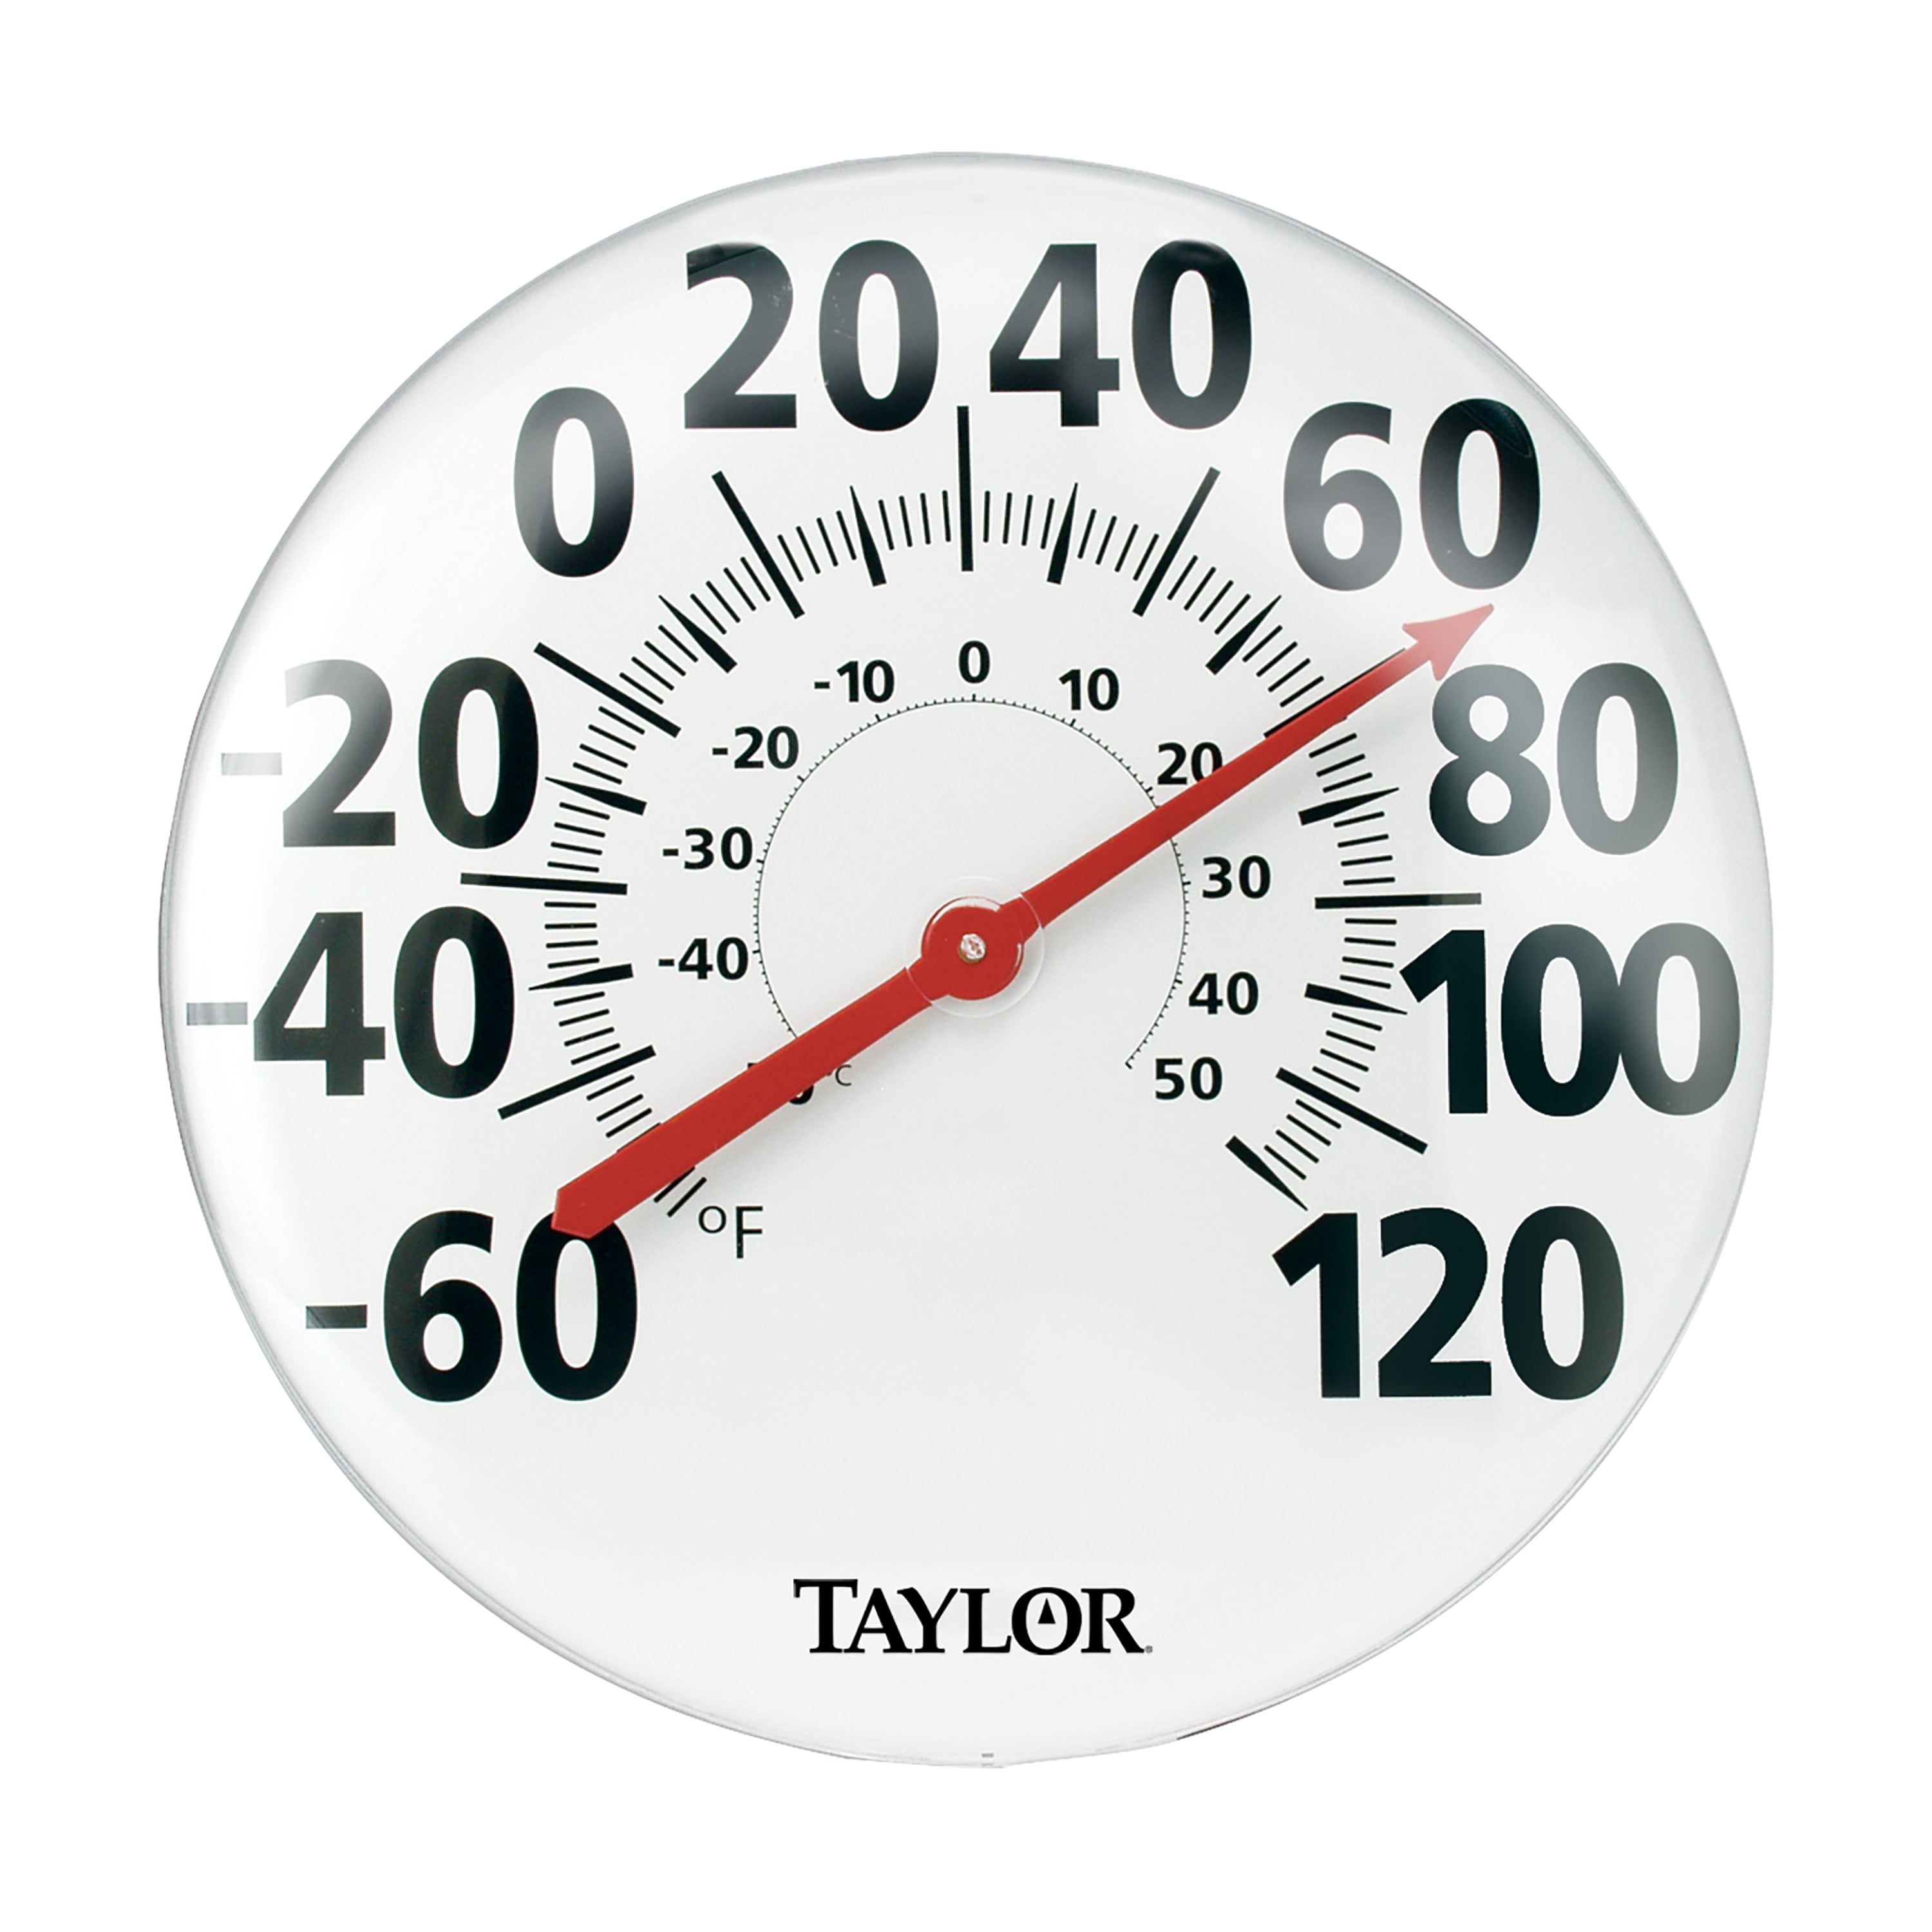 Buy Taylor Precision Digital Indoor & Outdoor Thermometer Black/Silver